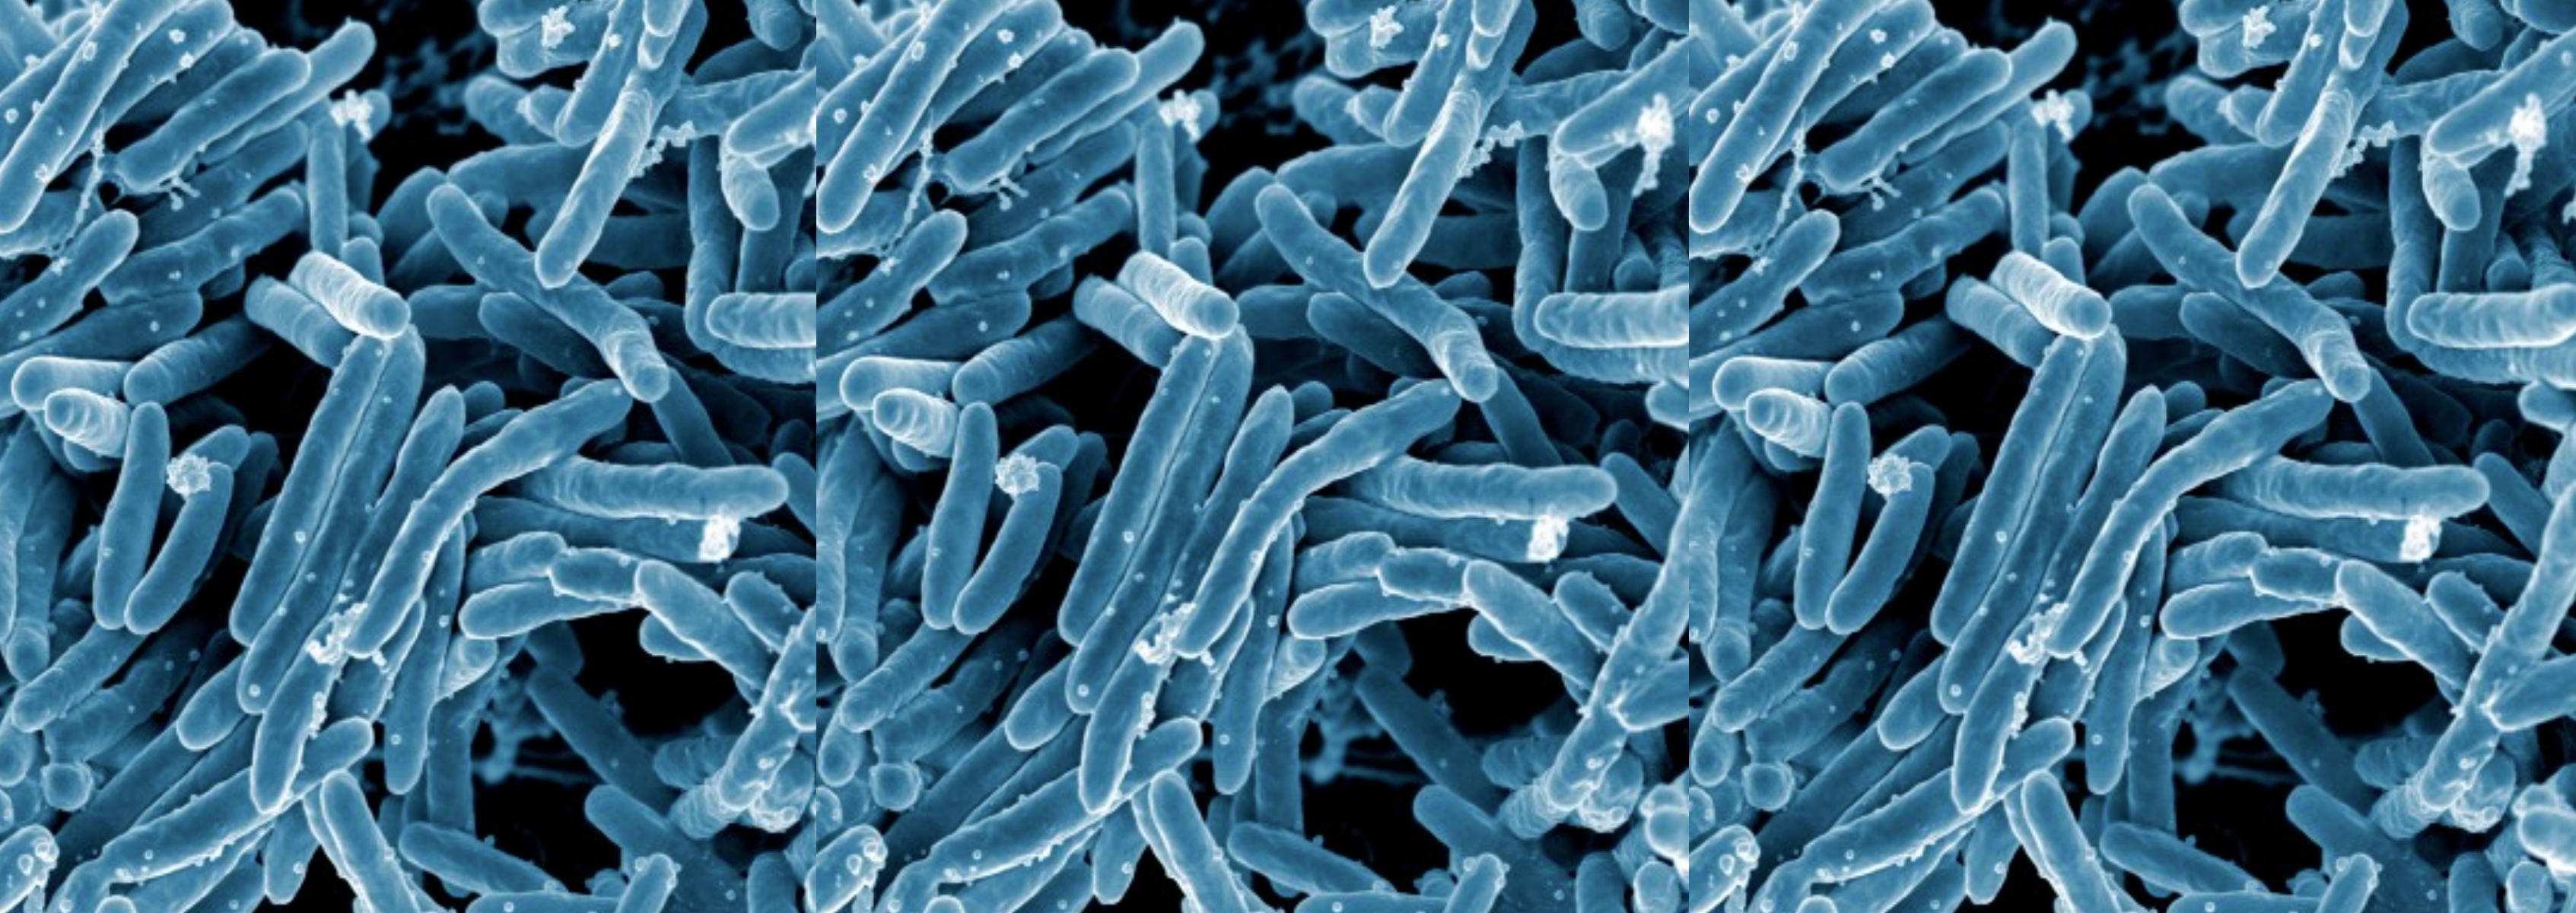 Genomics of Non-Tuberculosis Mycobacteria | J. Craig Venter Institute